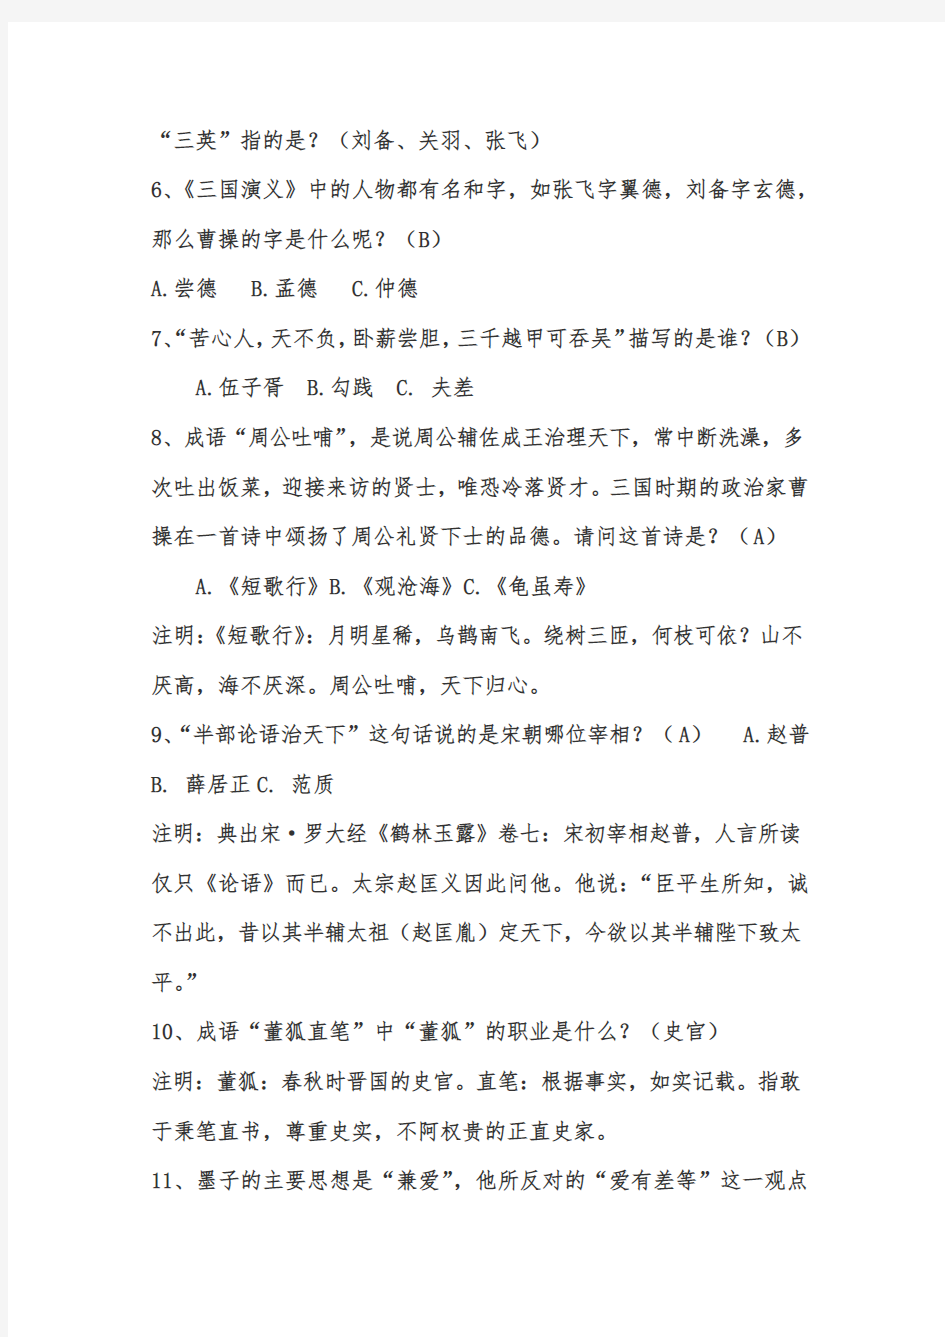 2020年中国古诗词知识竞赛题库及答案(共146题)